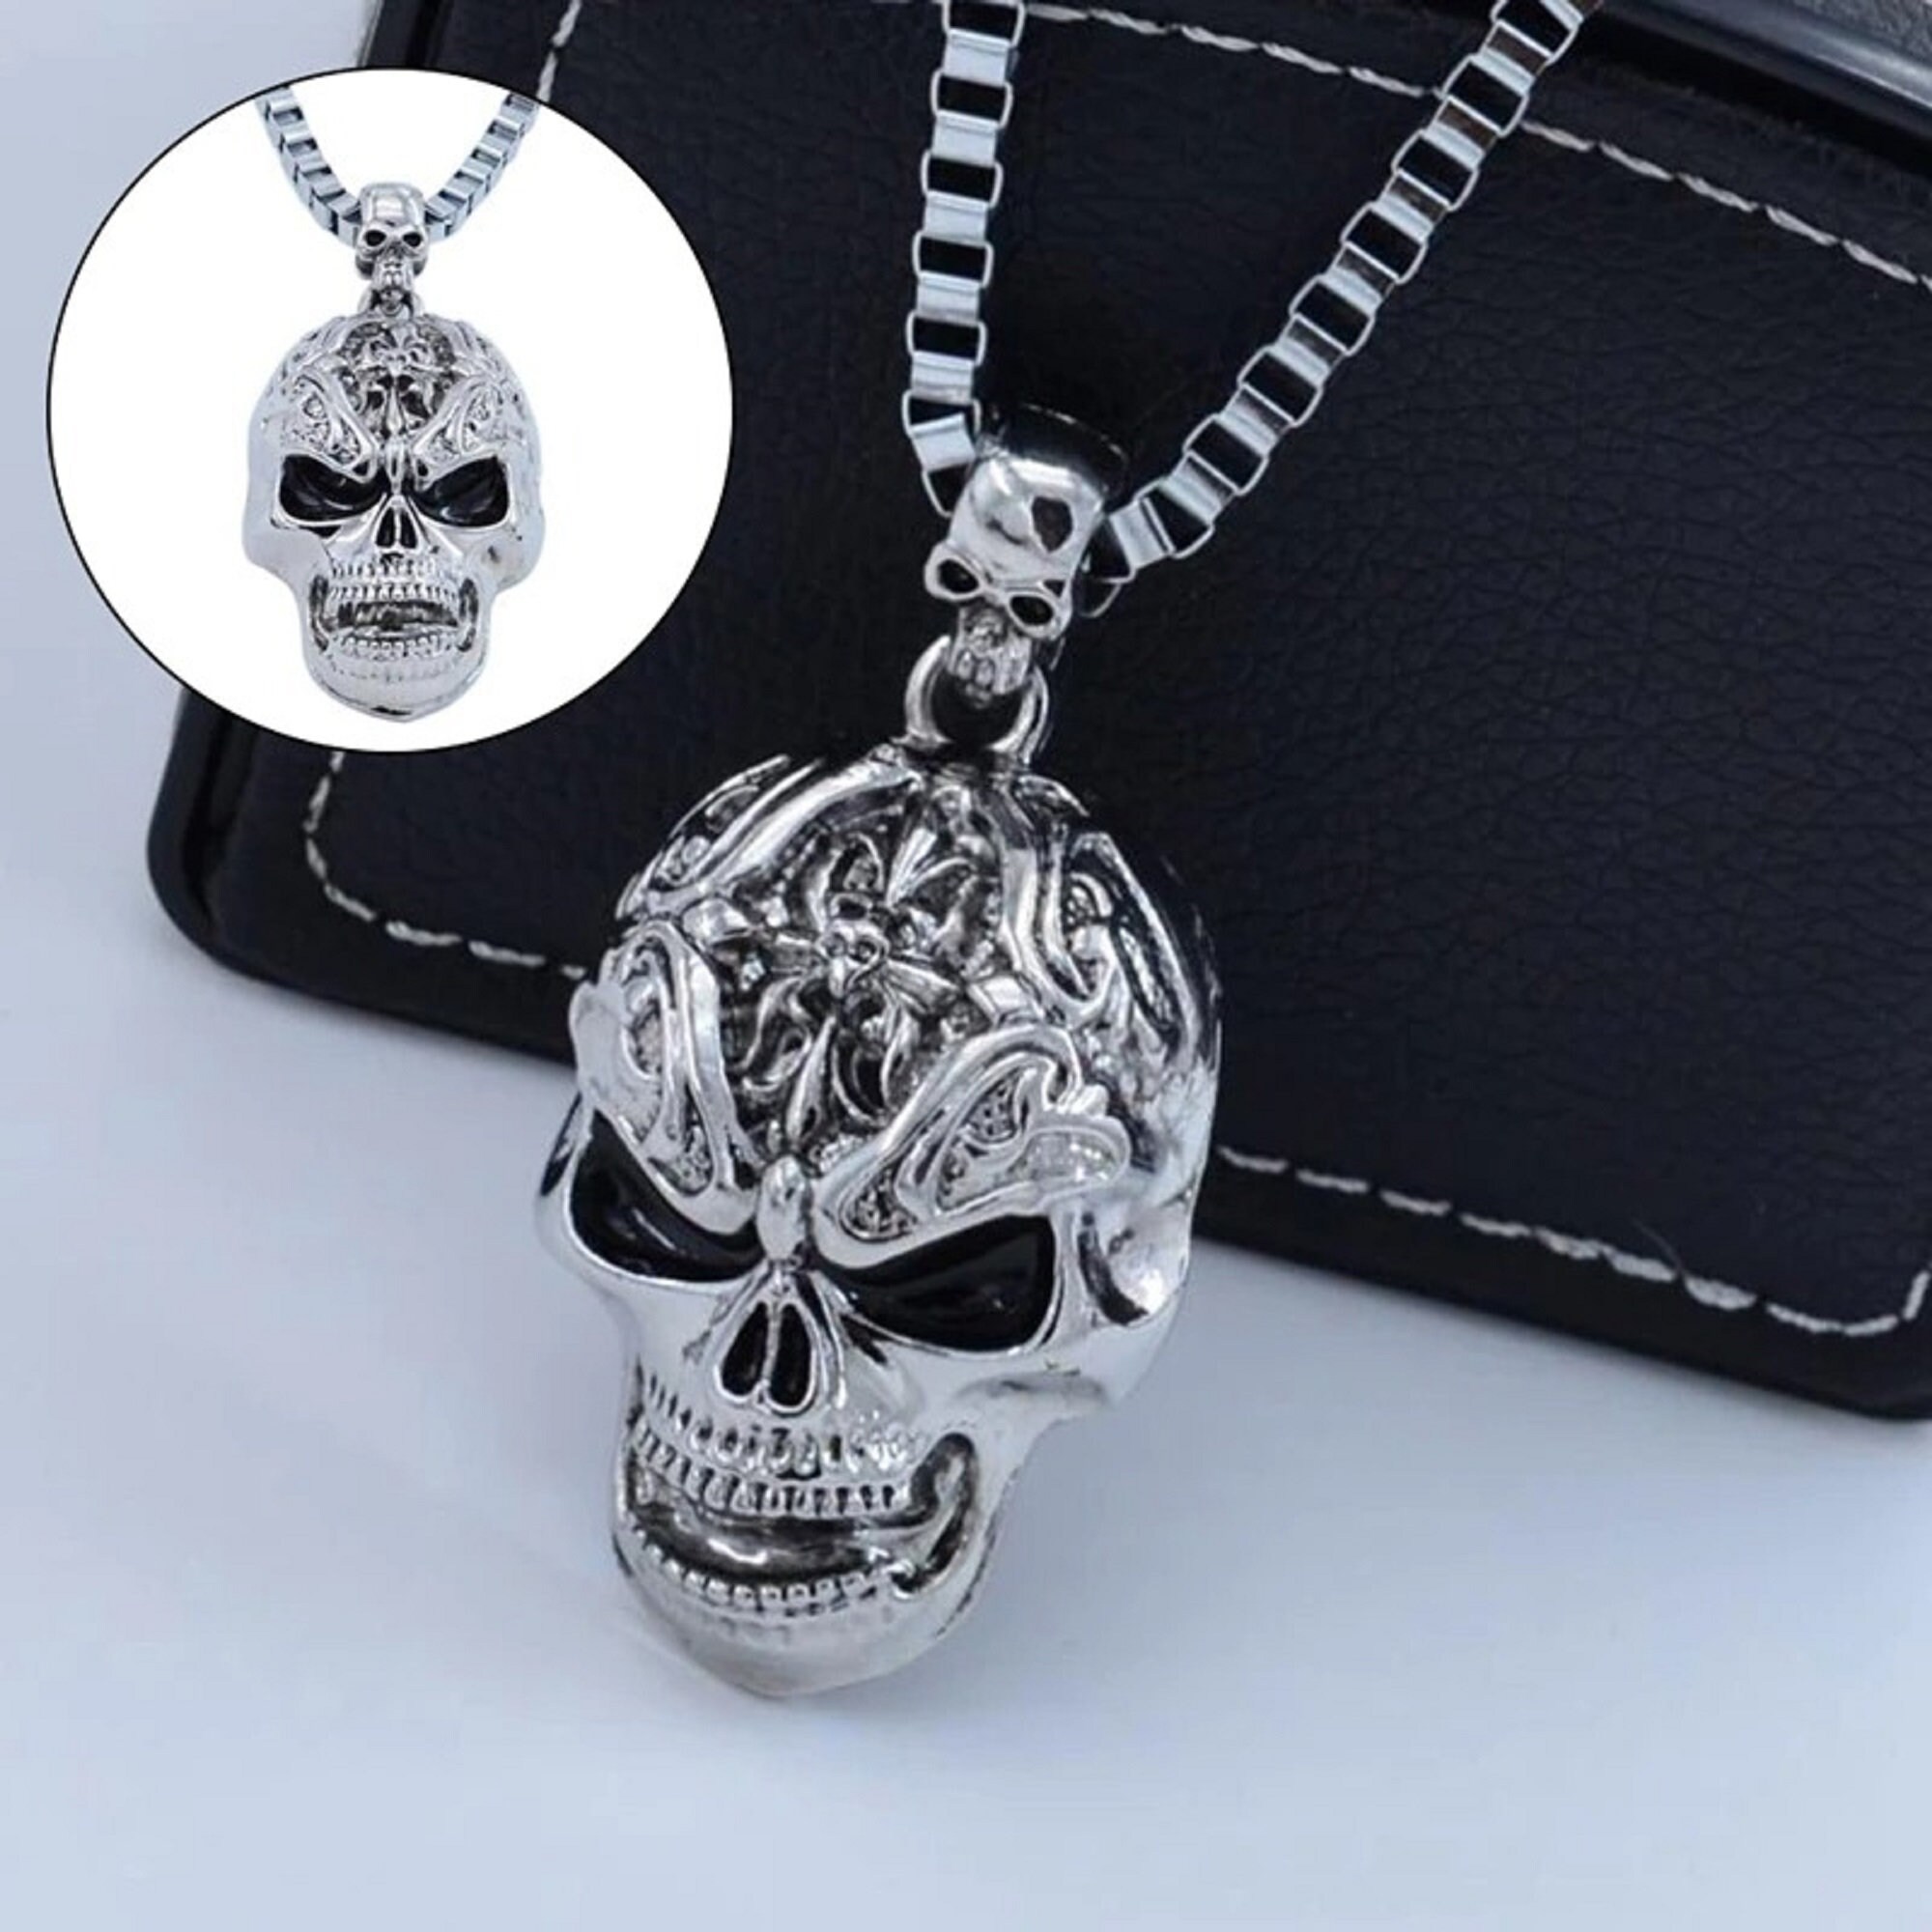 Vintage Retro Gothic Horror Halloween Skeleton Pendant Necklace Unisex Jewelry